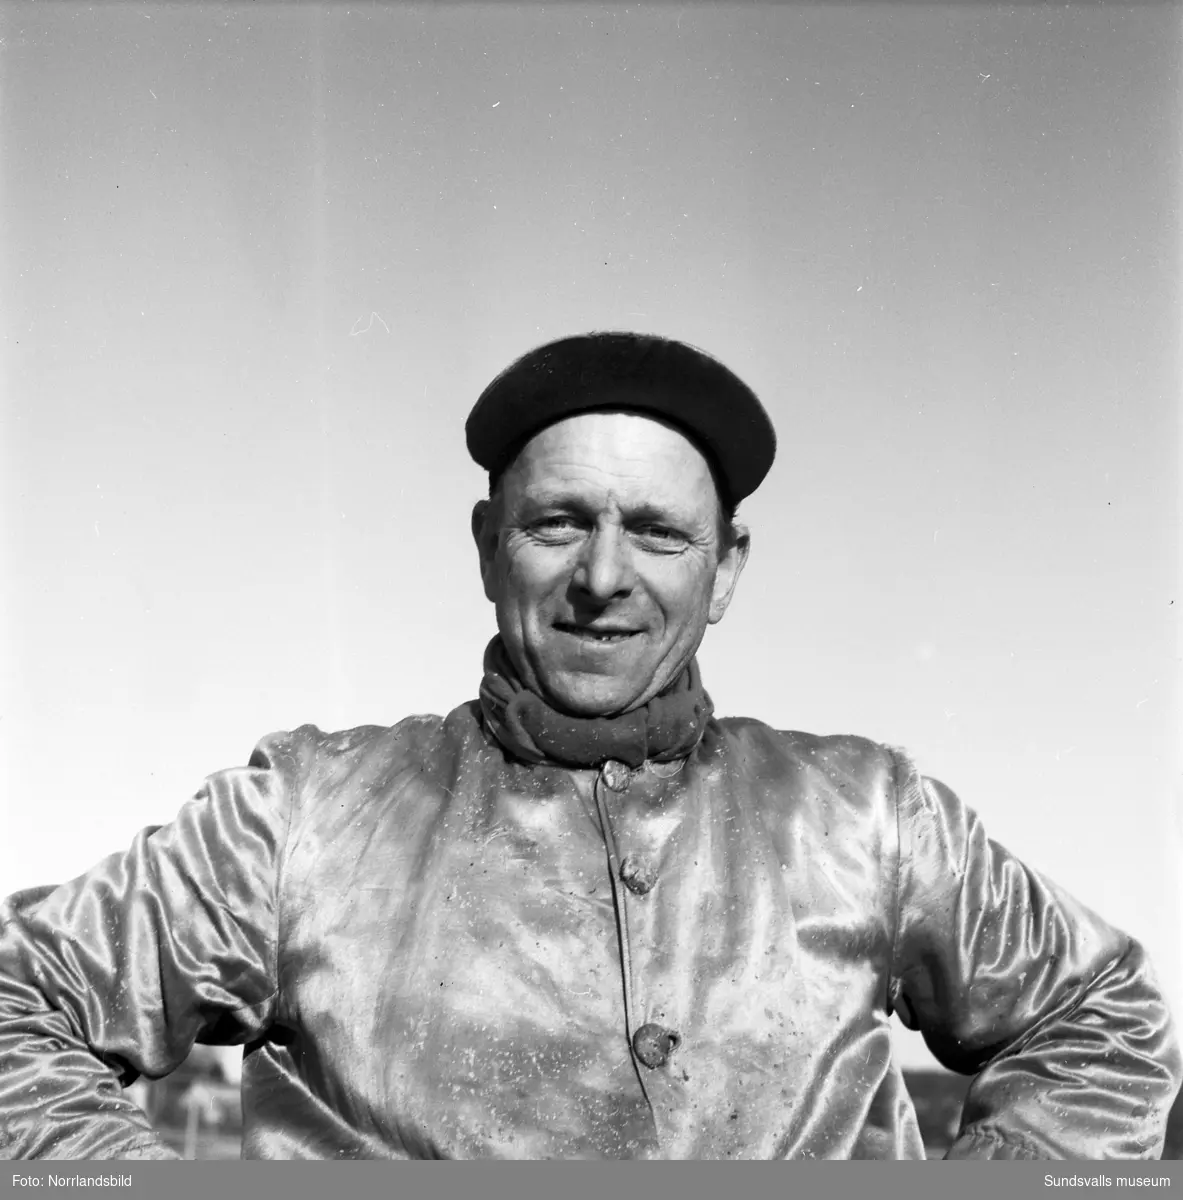 Tore Andersson, travtränare på Bergsåker. Tore var champion (segerrikast) tio gånger på Bergsåker mellan 1937 och 1952.